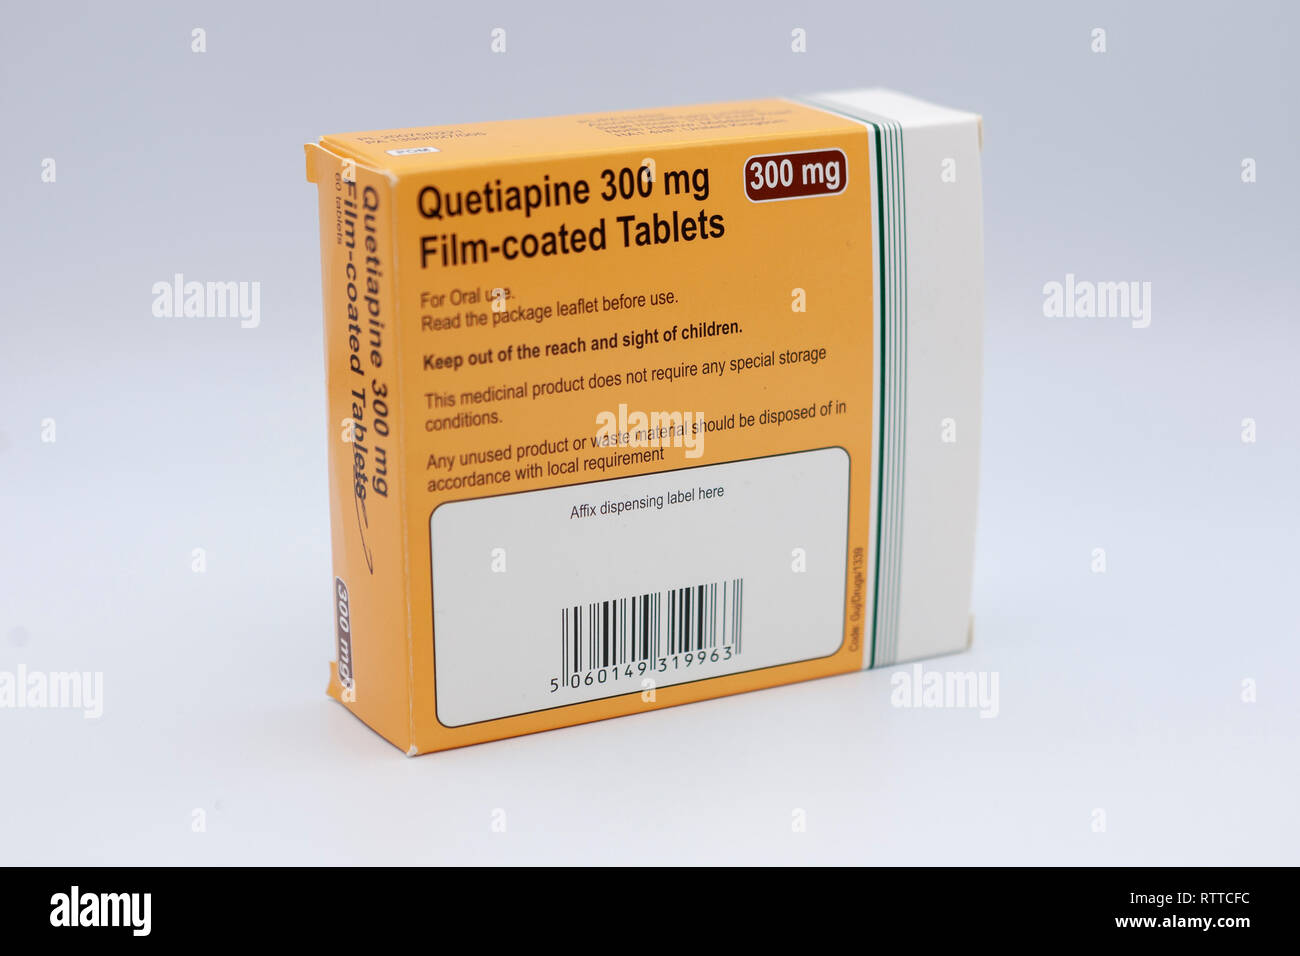 Quetiapin 300 mg Filmtabletten. Quetiapin, unter dem Handelsnamen Seroquel unter anderem verkauft, ist ein atypisches Antipsychotikum für die TREATMEN verwendet Stockfoto